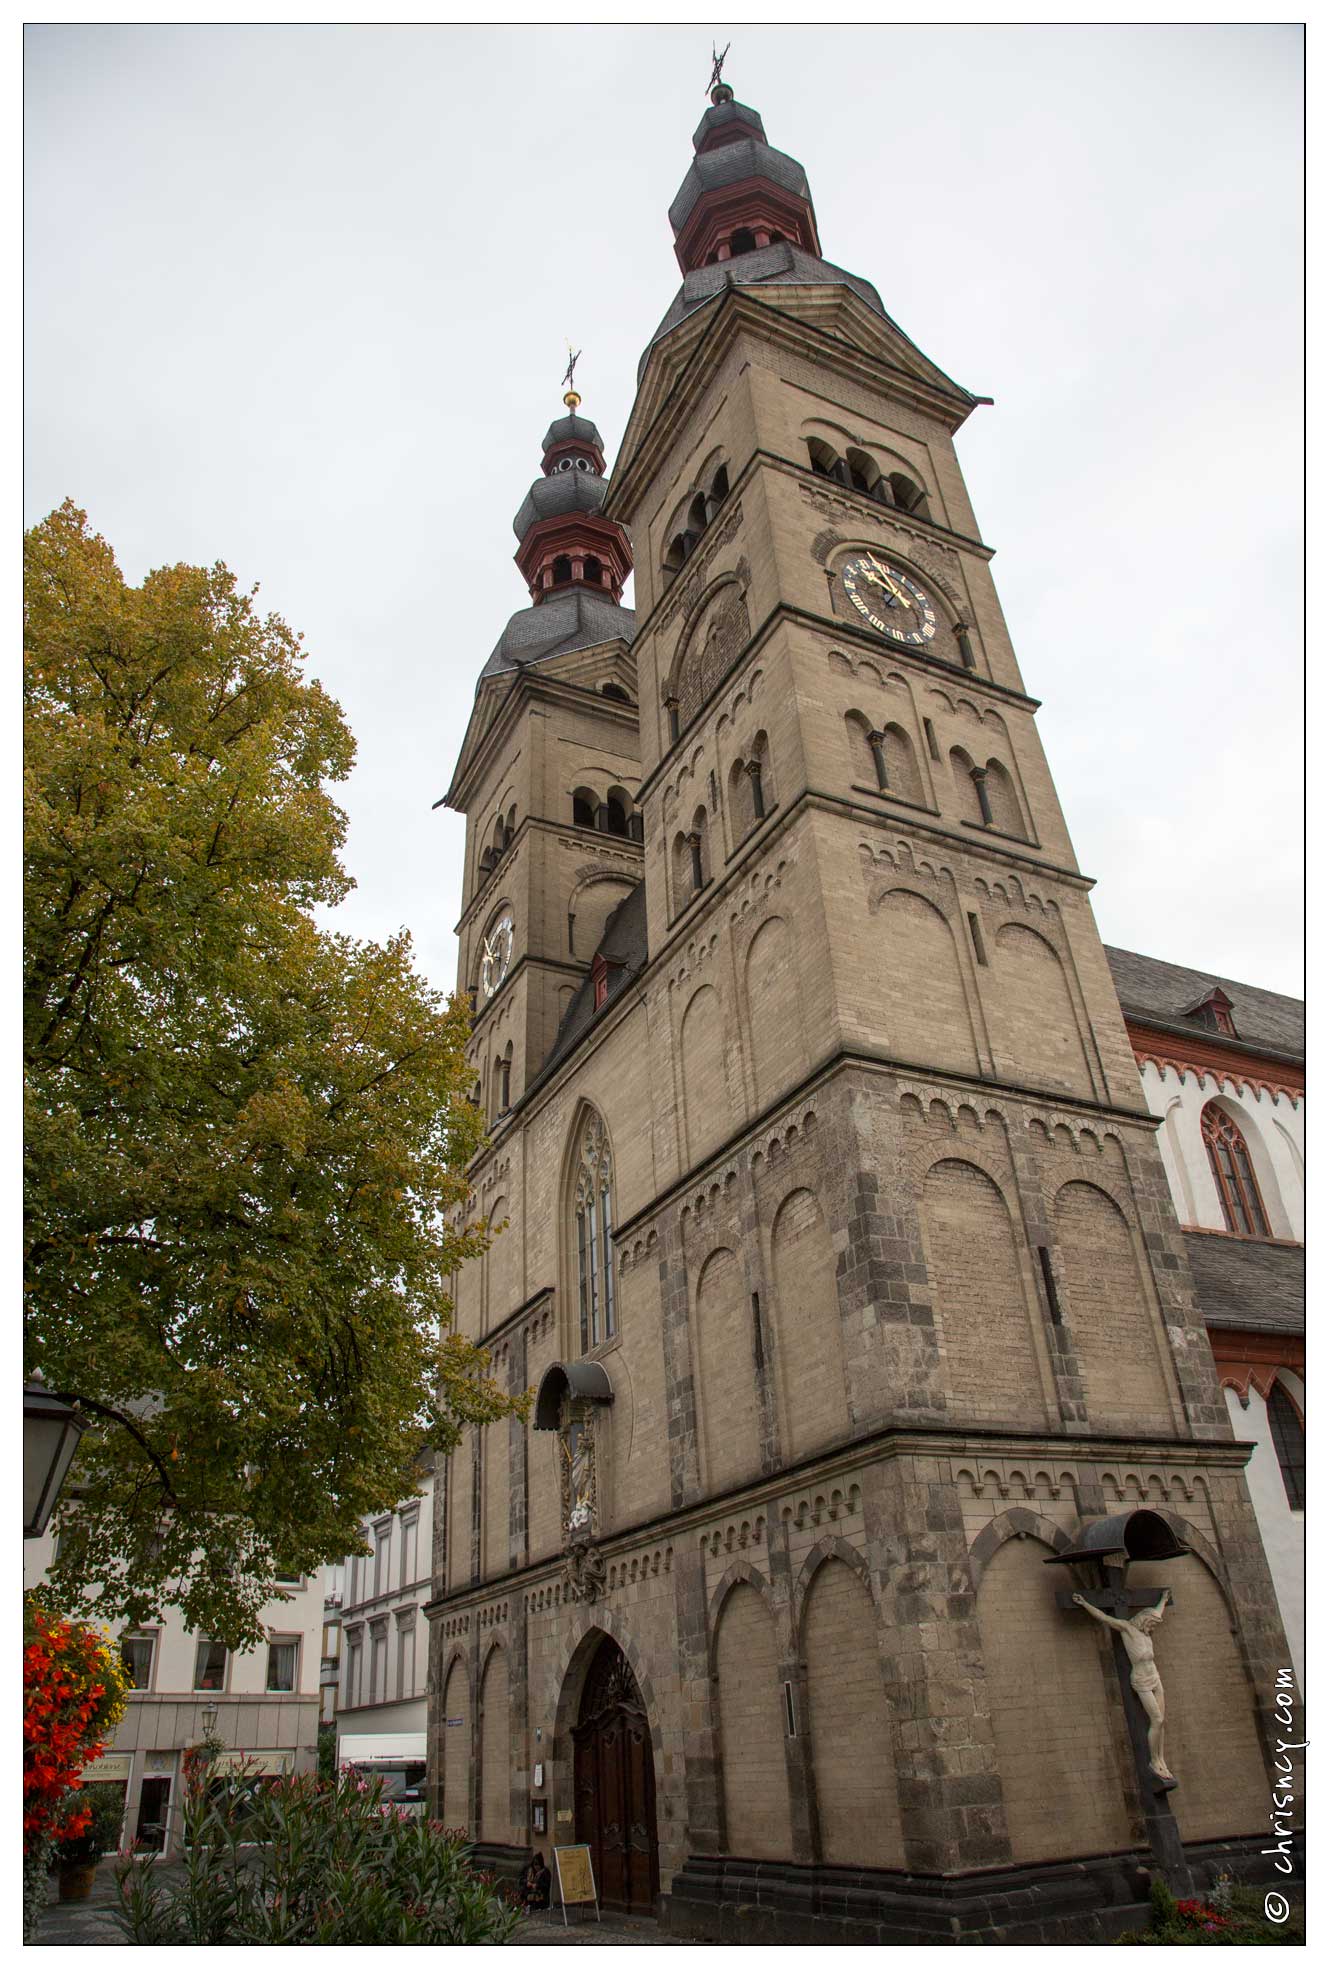 20151006-012_3475-Coblence_Liebfrauenkirche_notre_dame.jpg